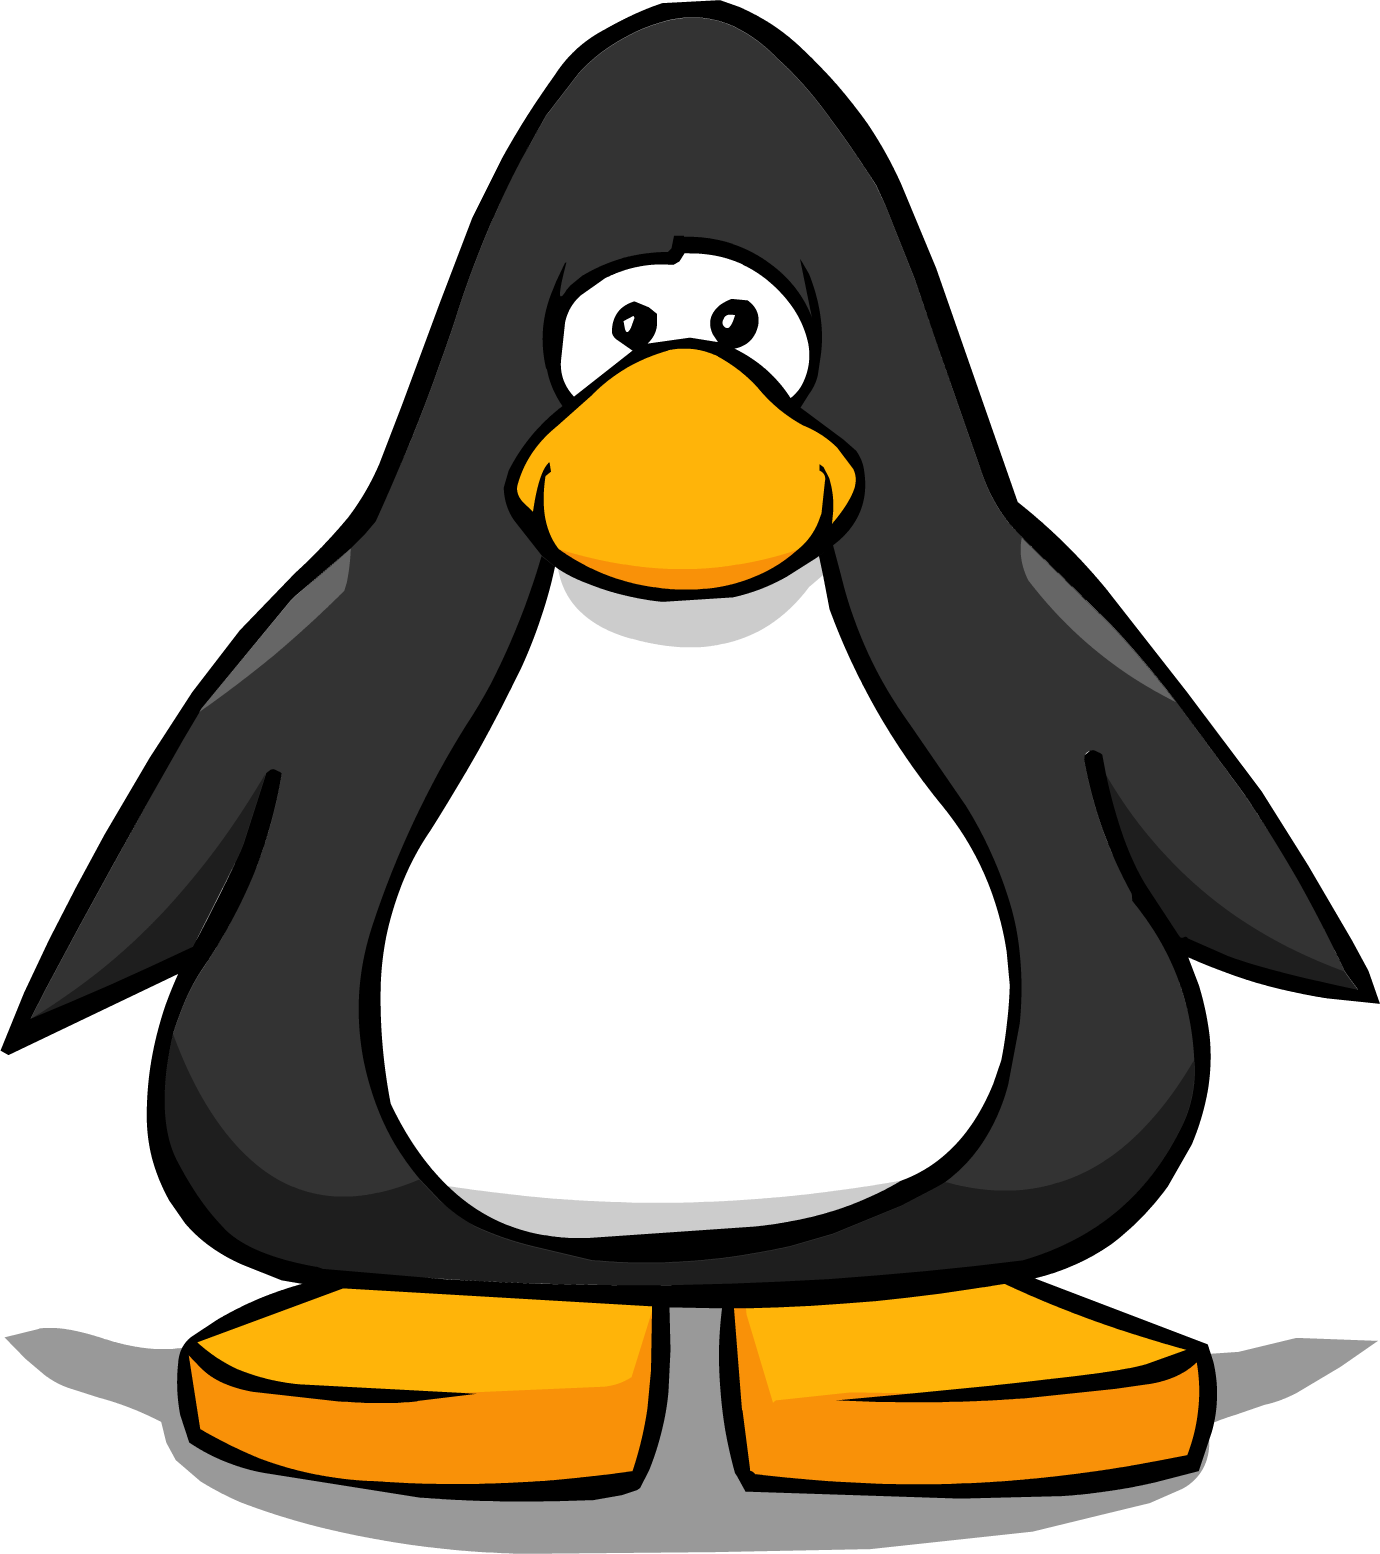 Club Penguin Original Penguin Wiki Clothing, penguin, club Penguin, penguin  png